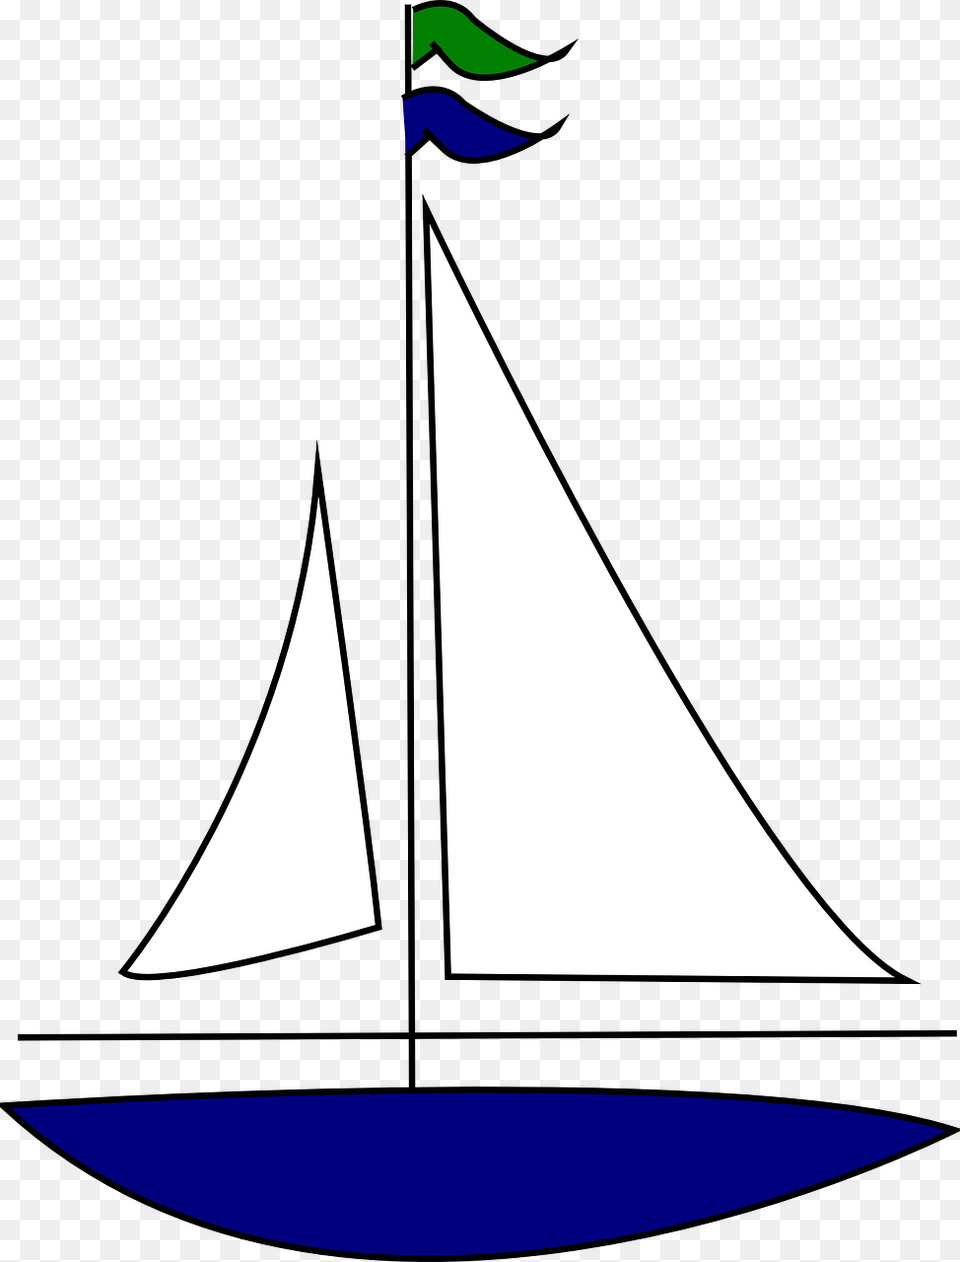 Image Of Sailboats, Boat, Sailboat, Transportation, Vehicle Png